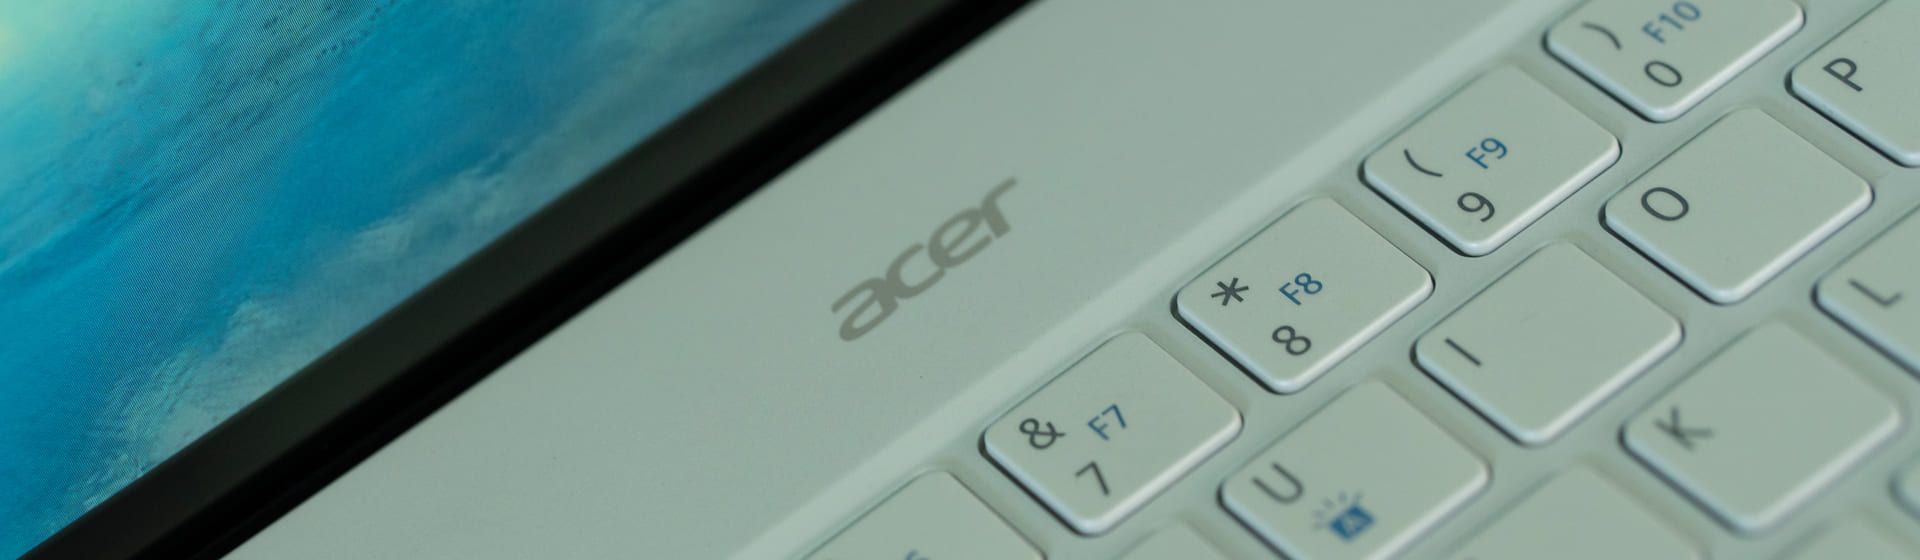 Melhor notebook Acer i5: 9 modelos dos mais simples aos tops